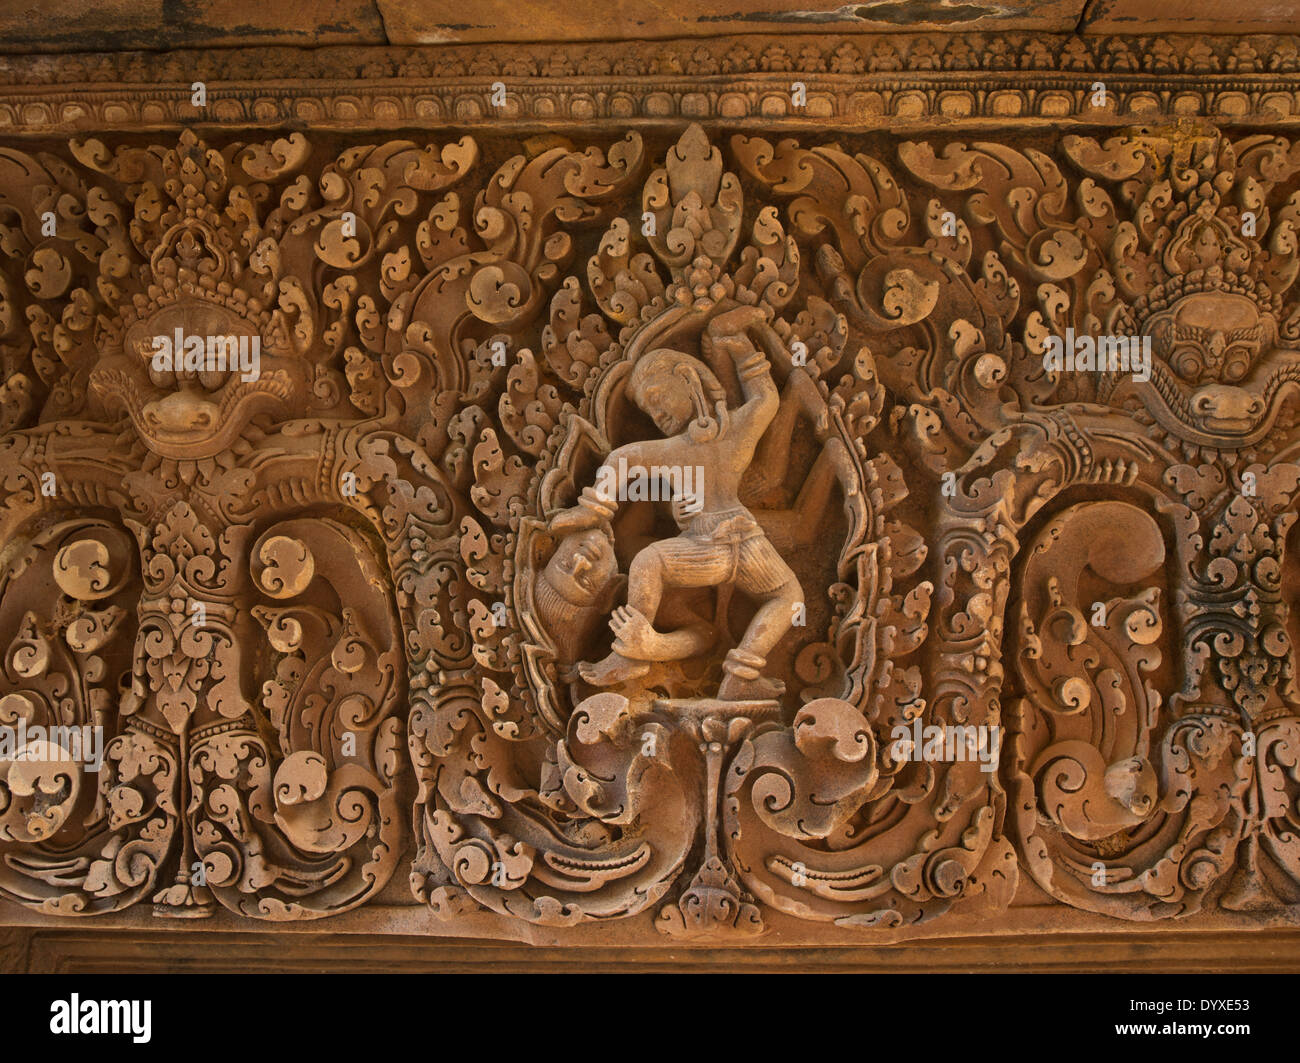 Dans les sculptures ornées de linteaux de grès au-dessus des embrasures à Banteay Srei un temple hindou dédié à Shiva. Siem Reap, Cambodge Banque D'Images